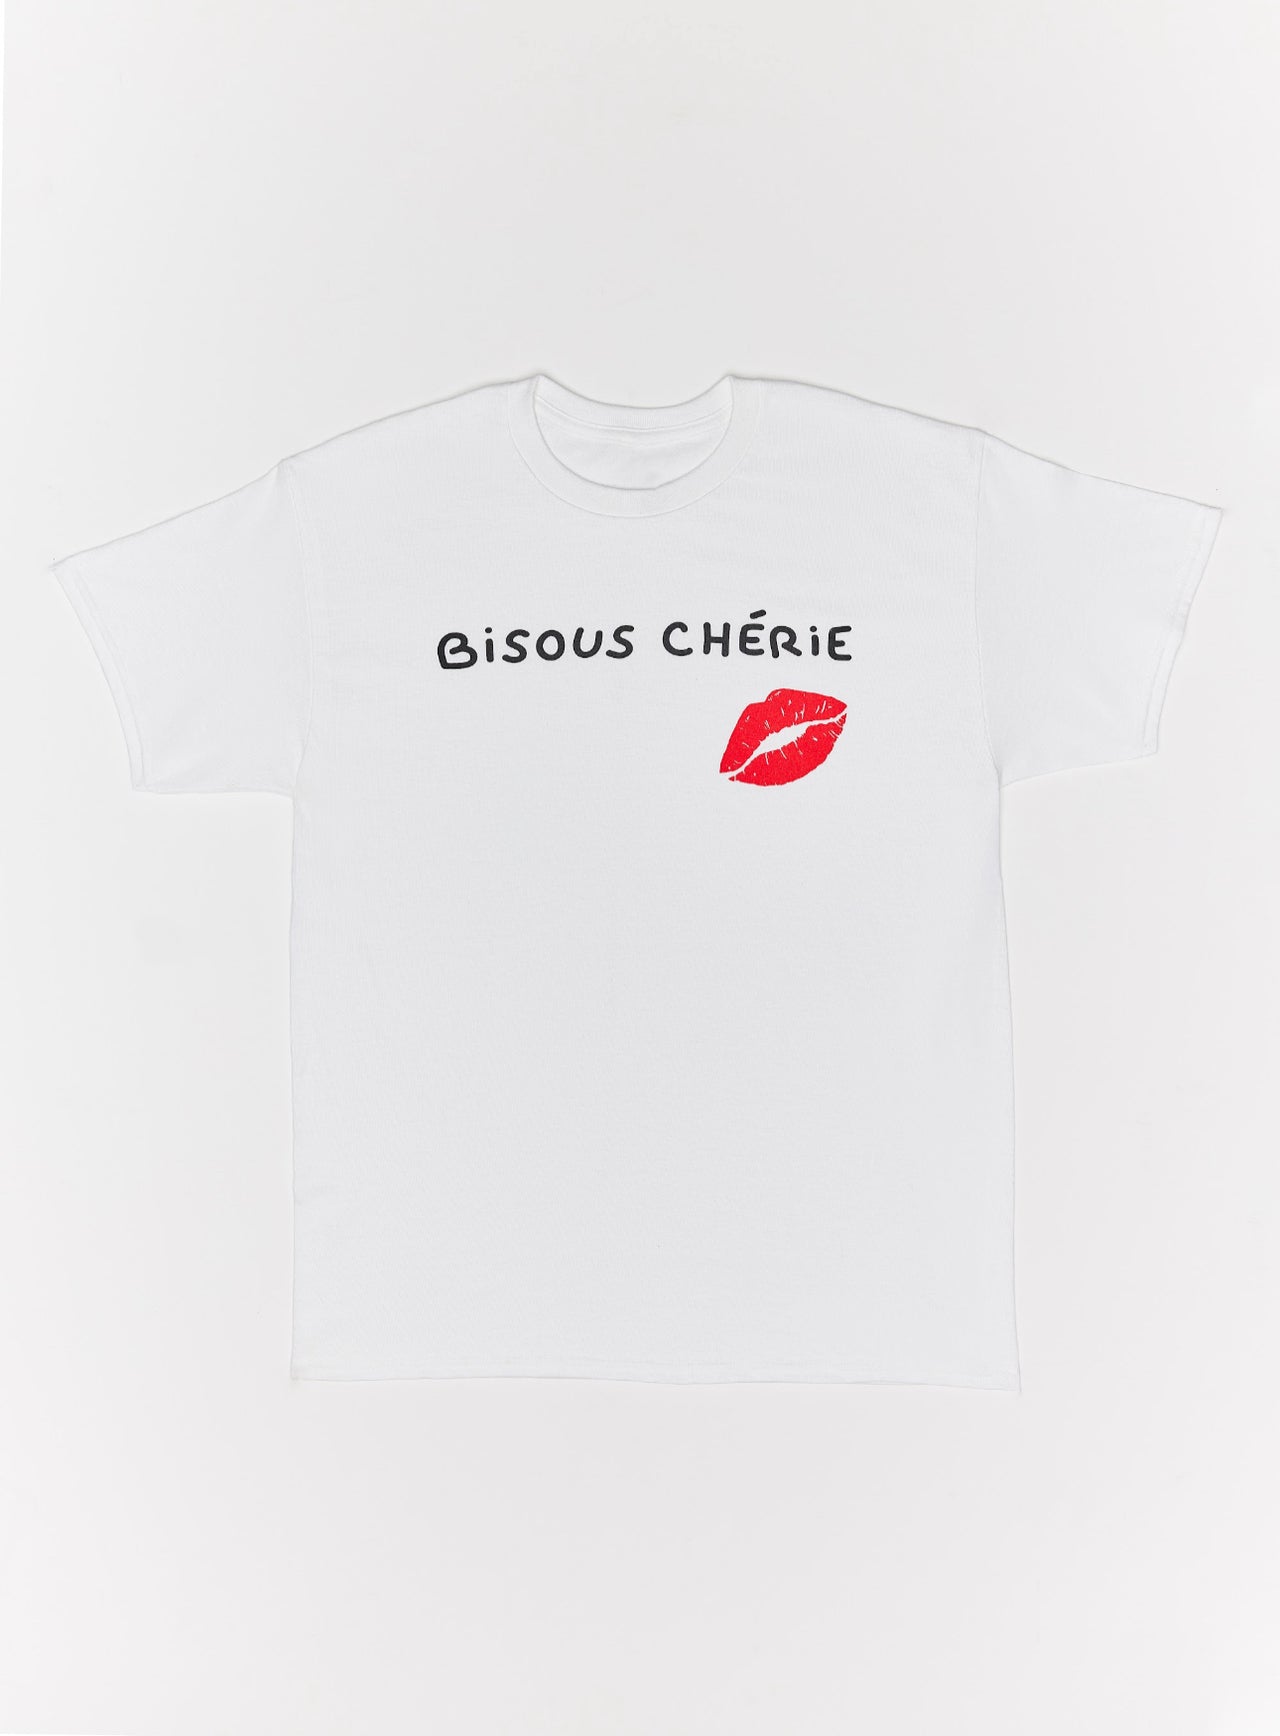 Chapitre 2- Bisous Cherie- T-Shirt